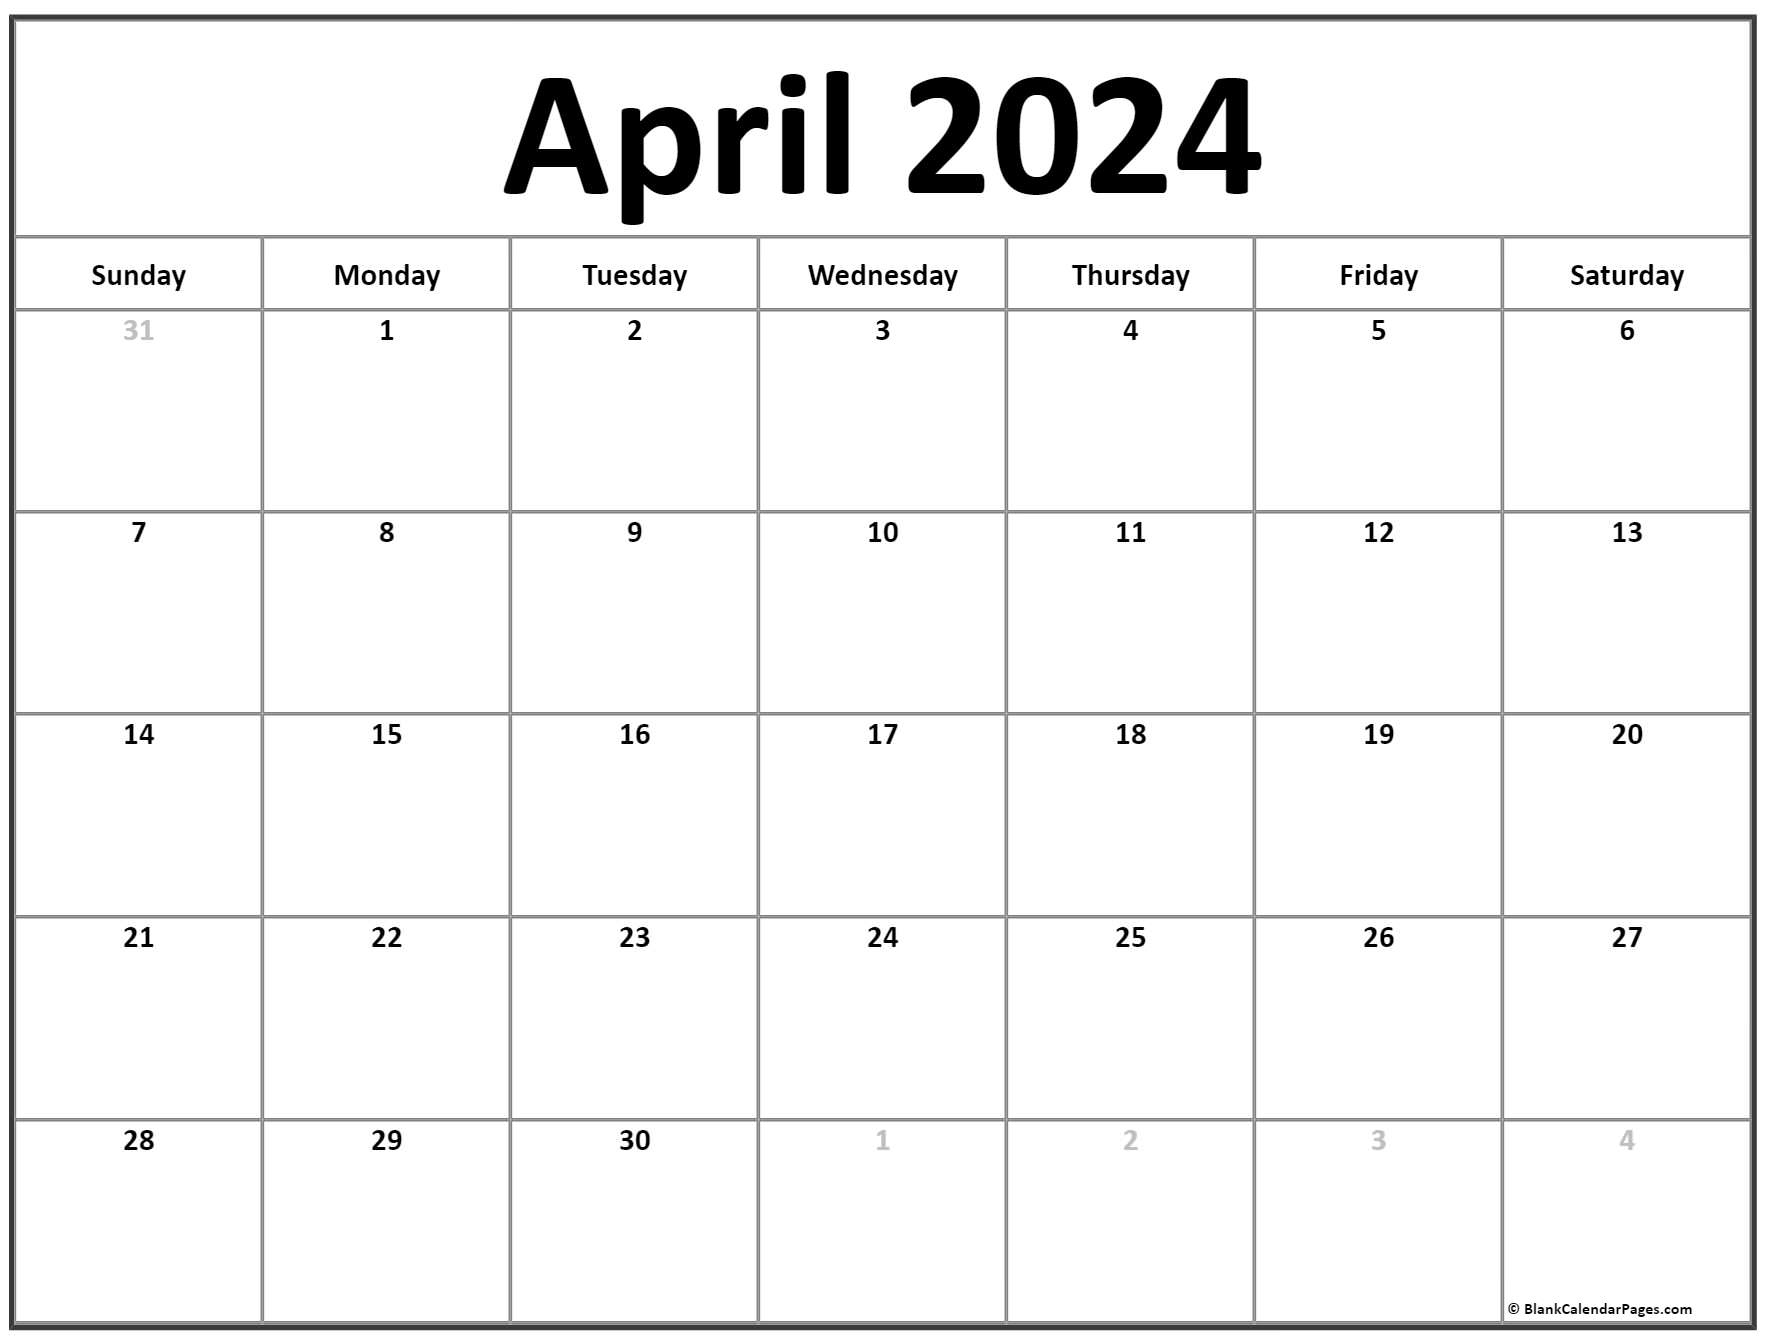 April 2024 Calendar | Free Printable Calendar for Free Printable April 2024 Calendar Large